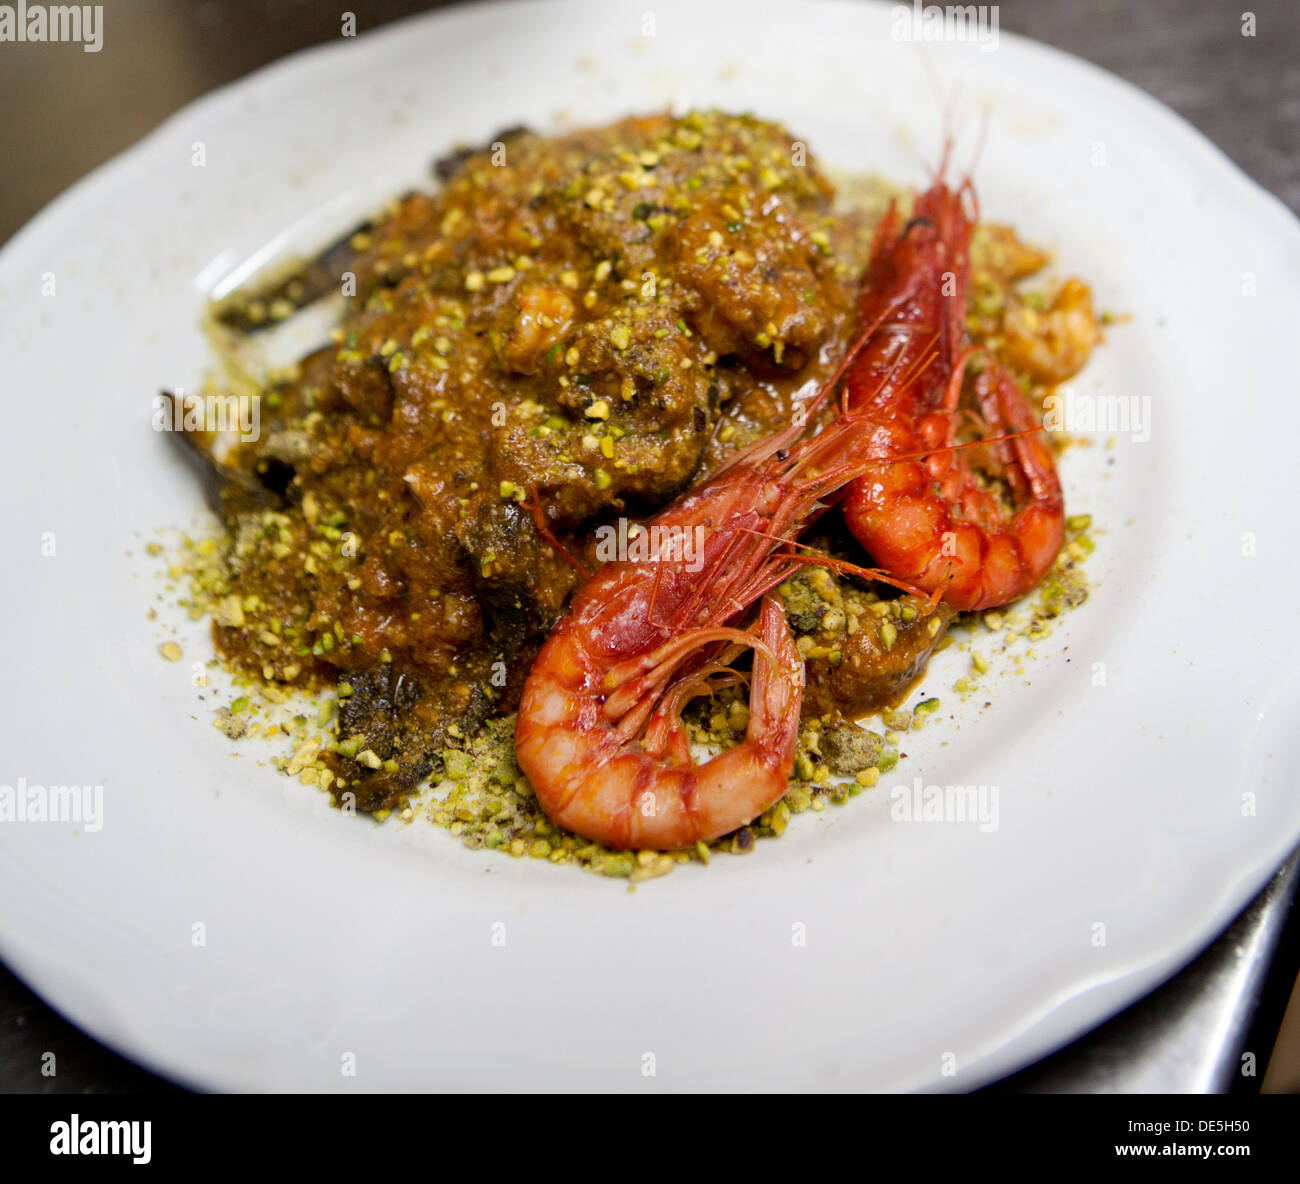 Un roi noir pâtes aux tomates, crevettes avec sauce Pistache servie sur une assiette blanche. Banque D'Images